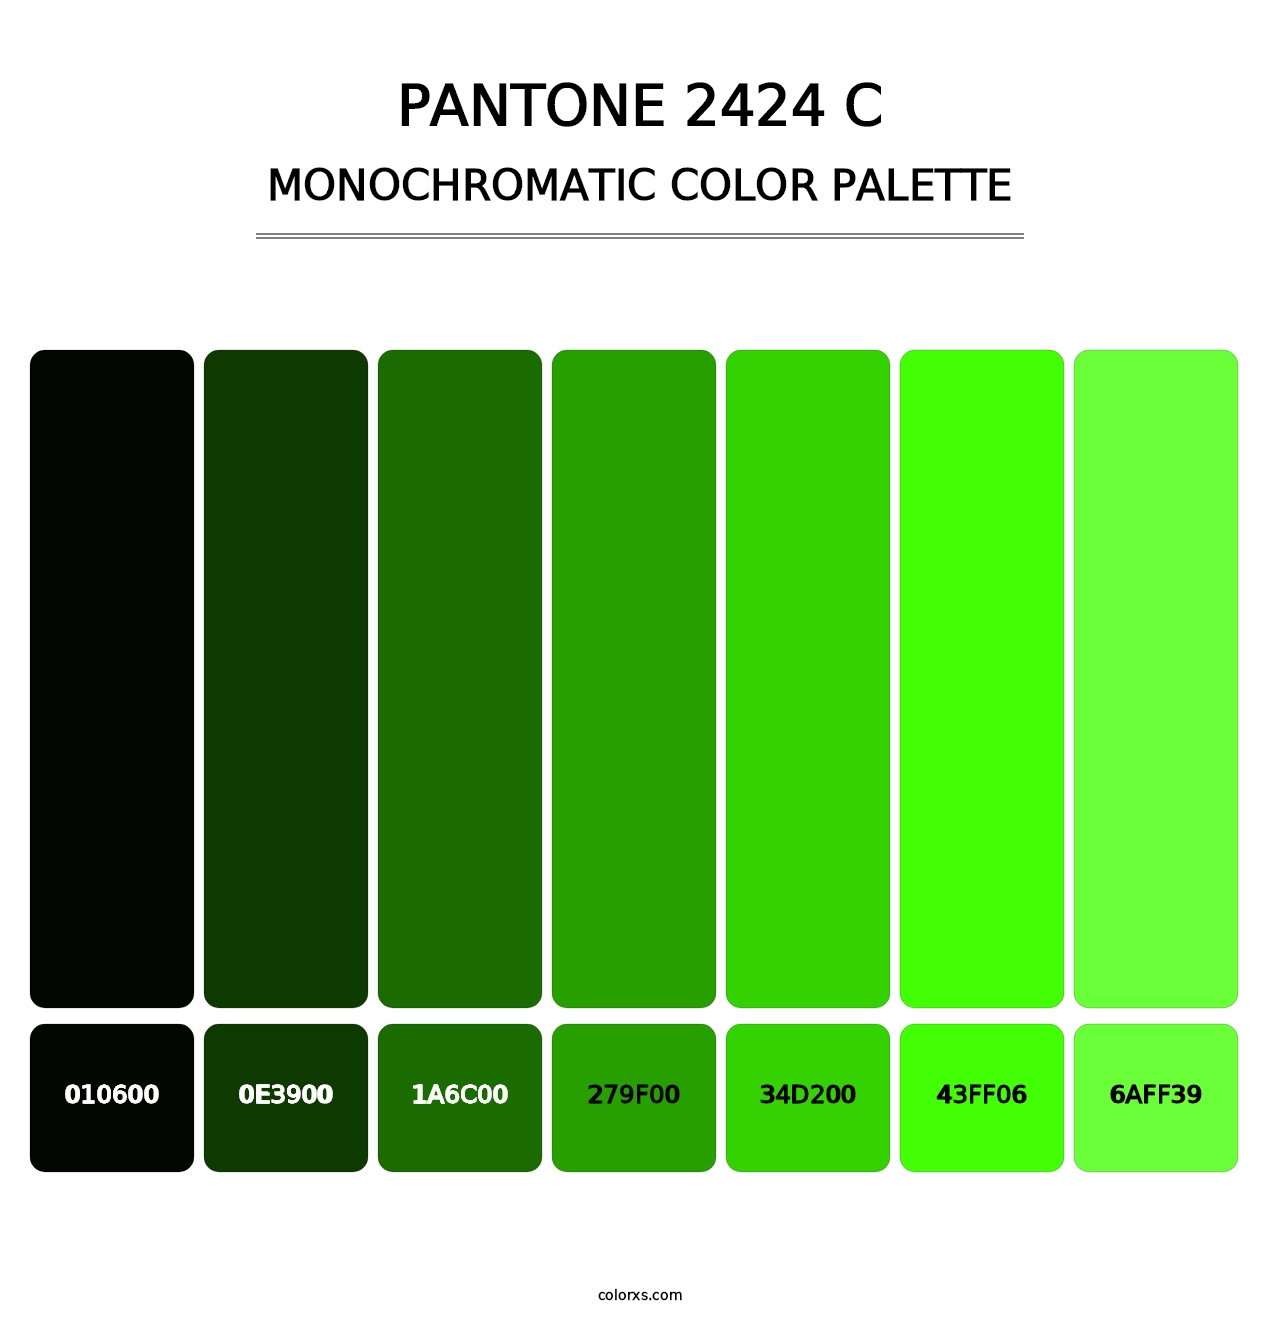 PANTONE 2424 C - Monochromatic Color Palette